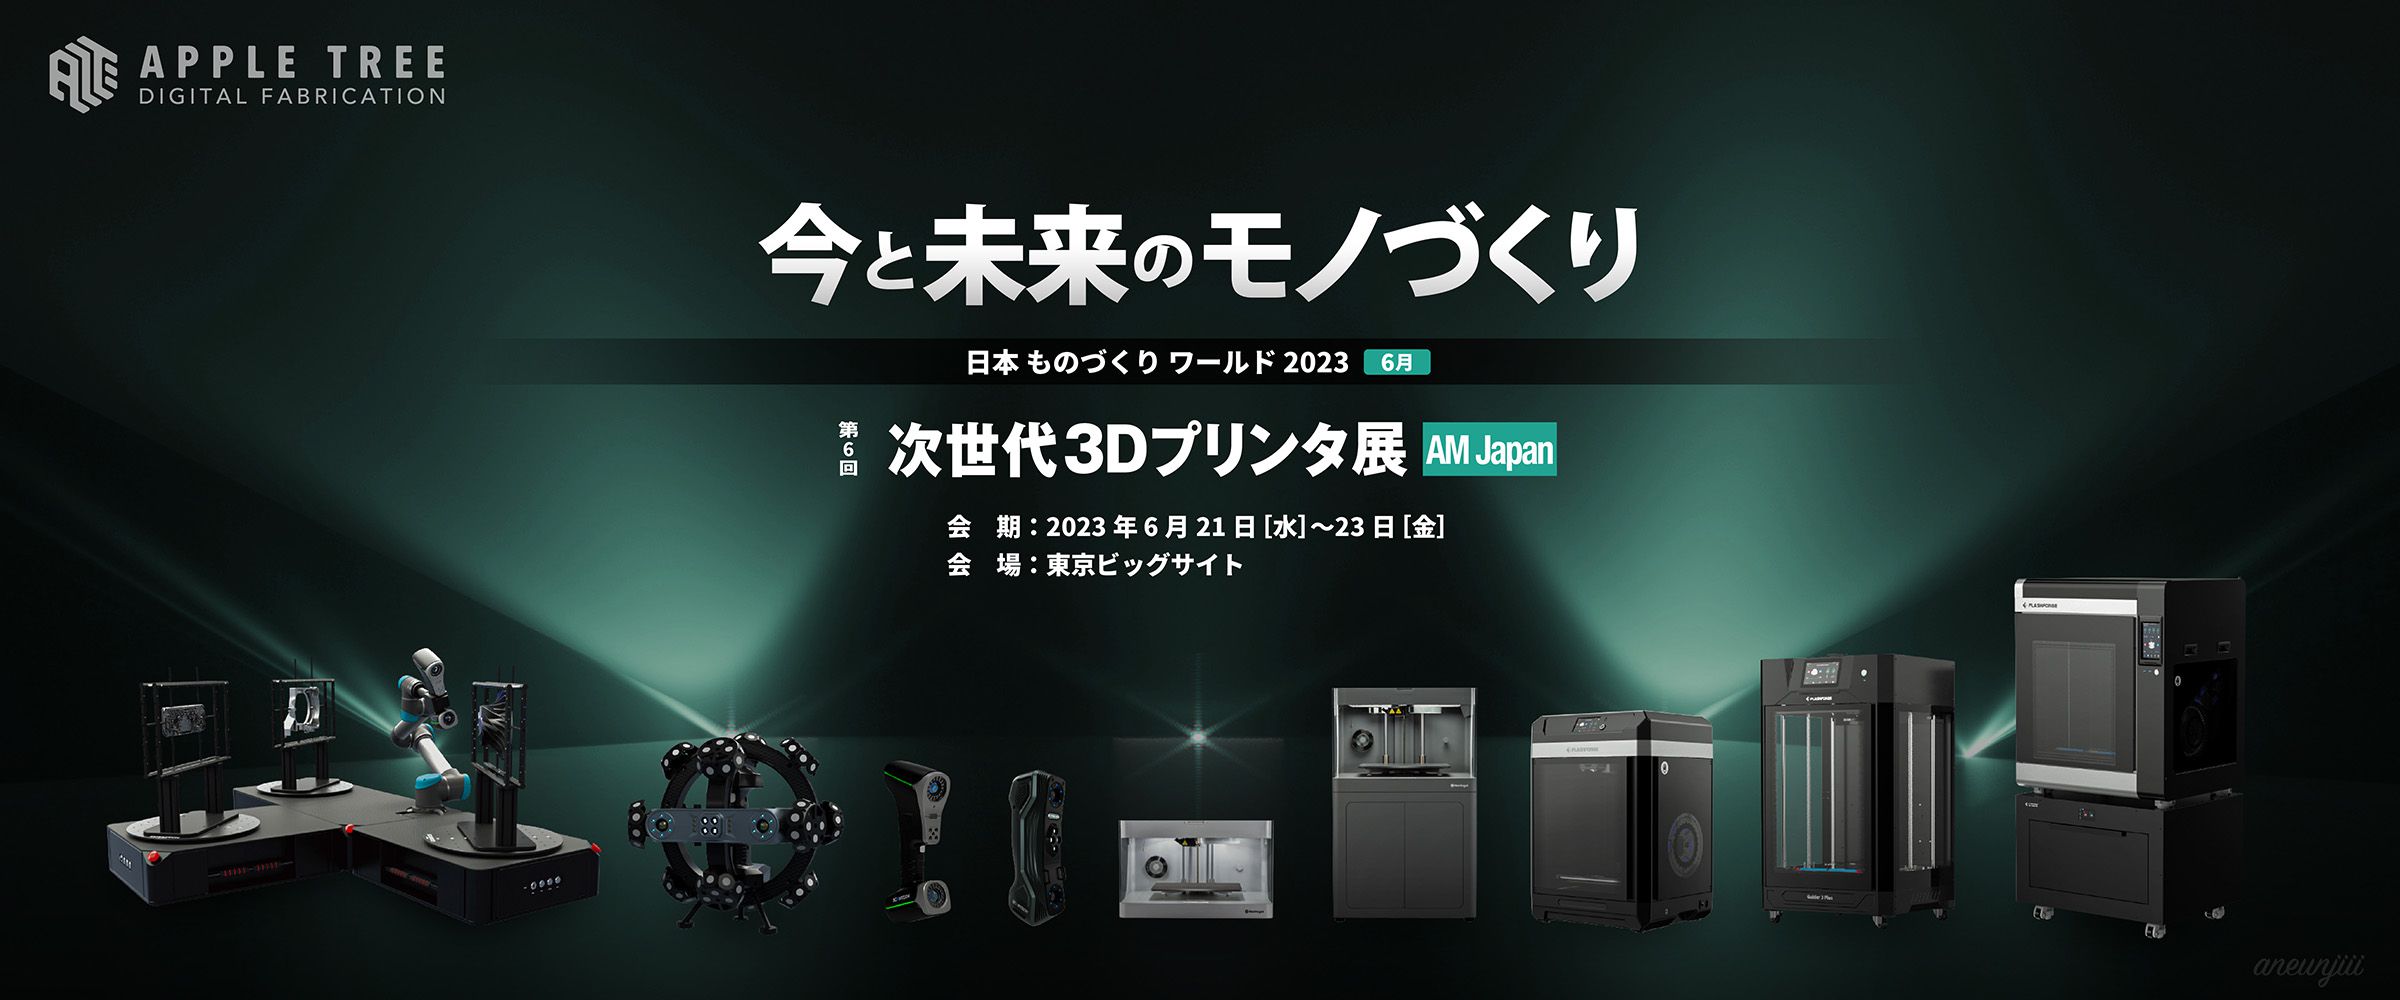 第6回 次世代3Dプリンタ展 AM Japan(エーエムジャパン) 2023